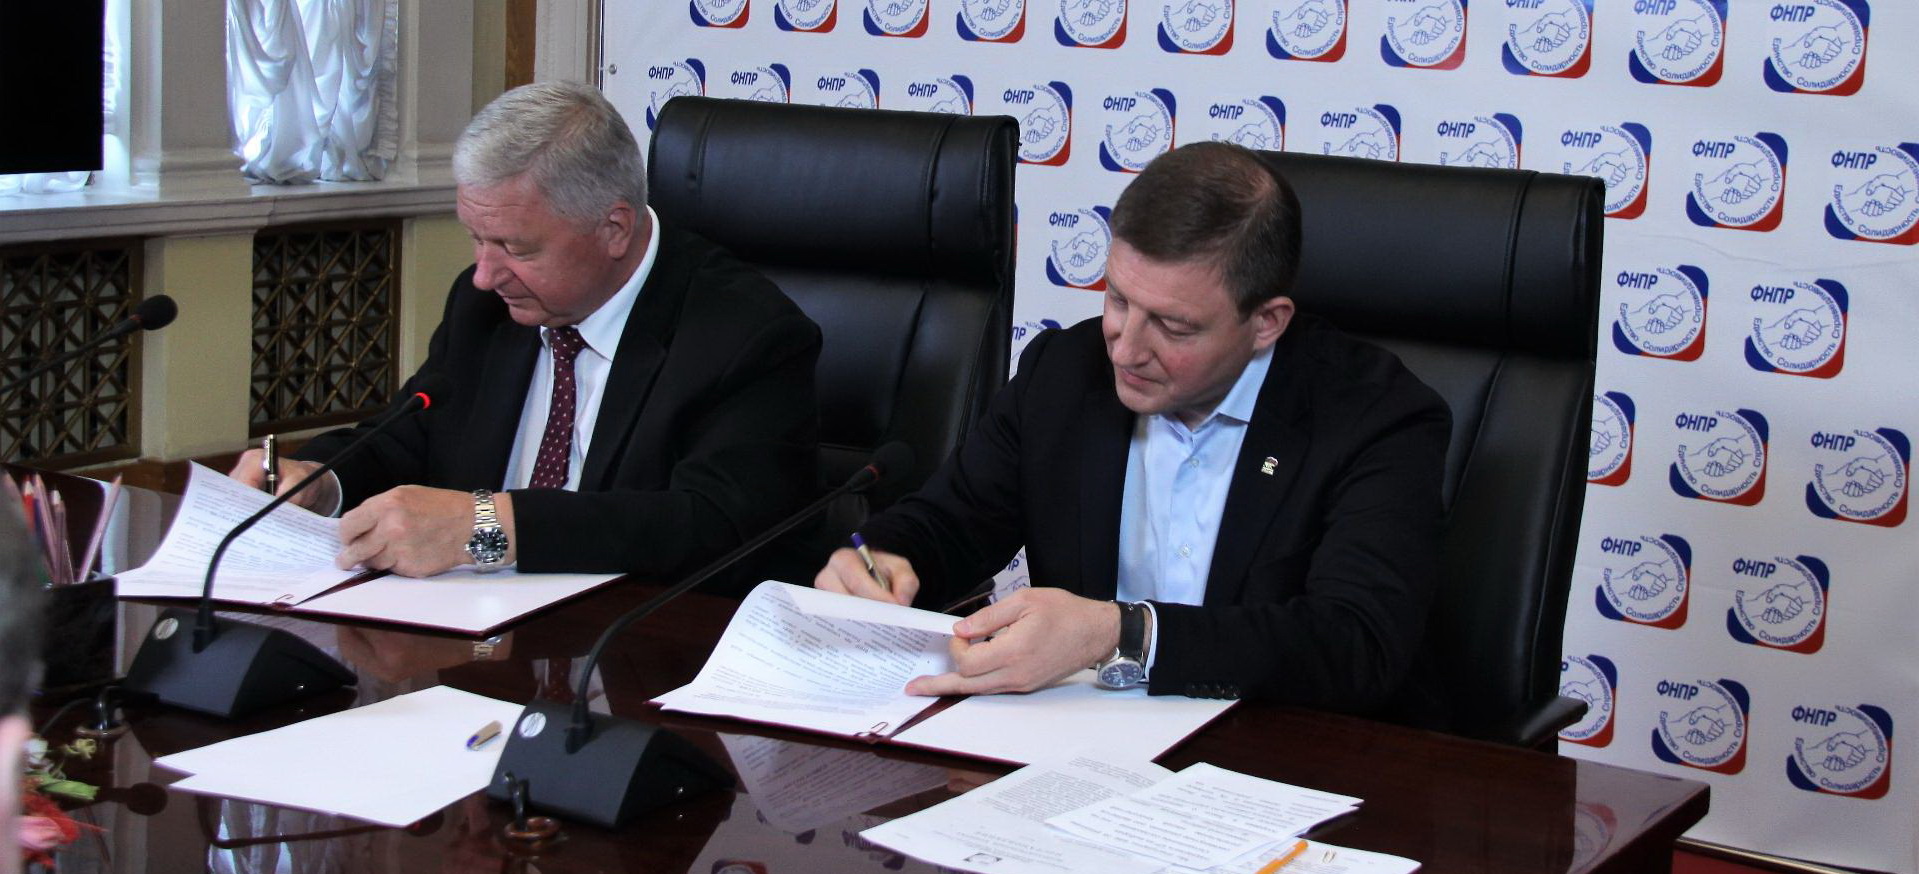 ФНПР и «Единая Россия» подписали Соглашение о поддержке на выборах в Госдуму и законодательные органы субъектов РФ